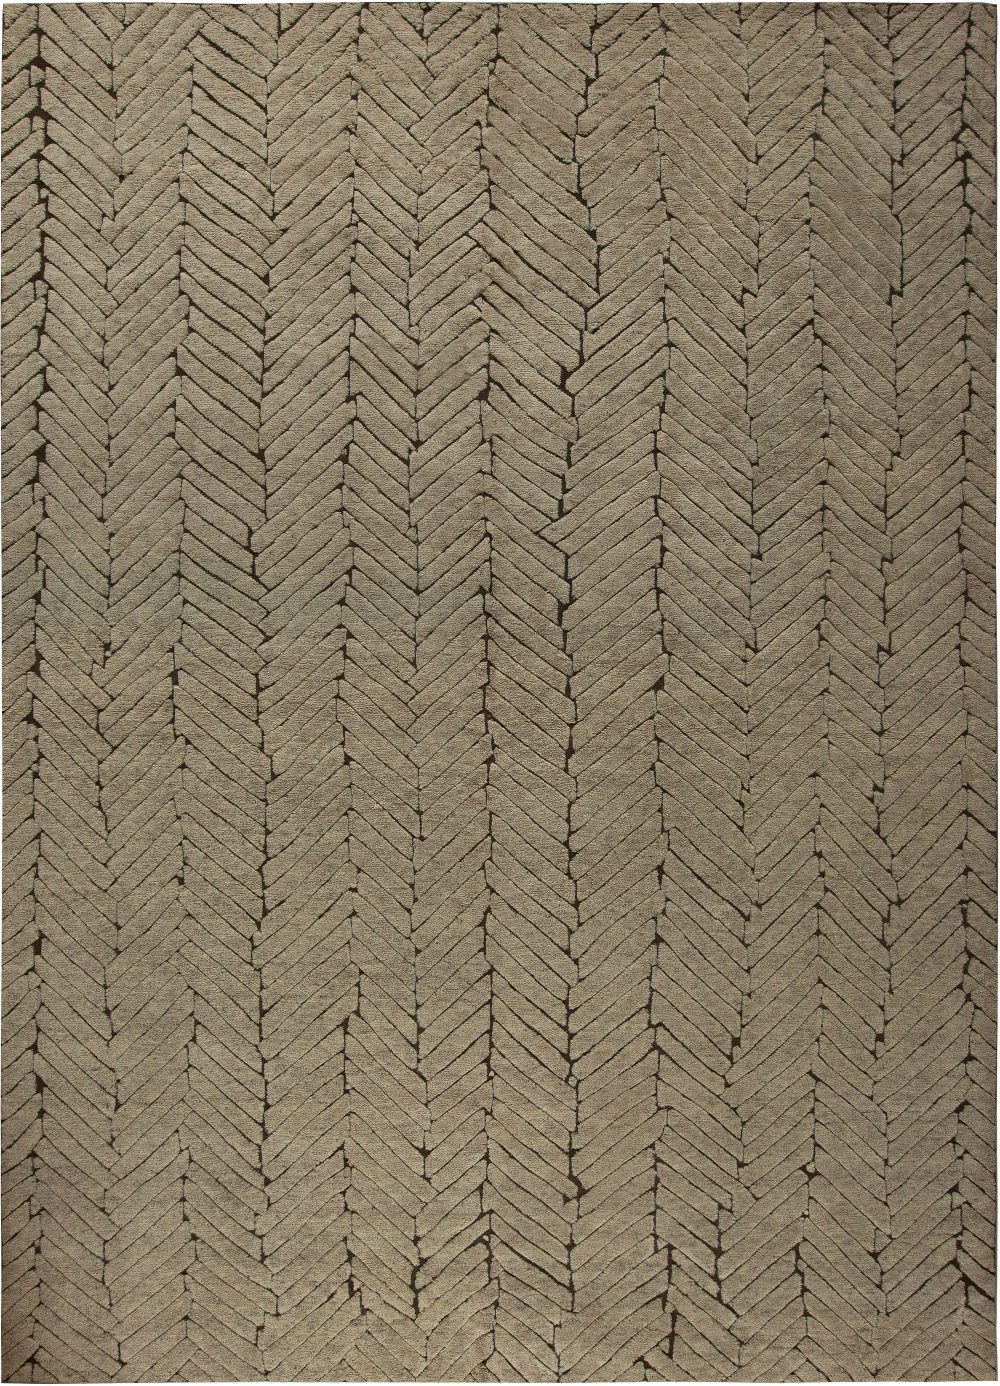 Doris Leslie Blau Collection Geometric Moroccan Style Beige, Brown Wool Rug N11113